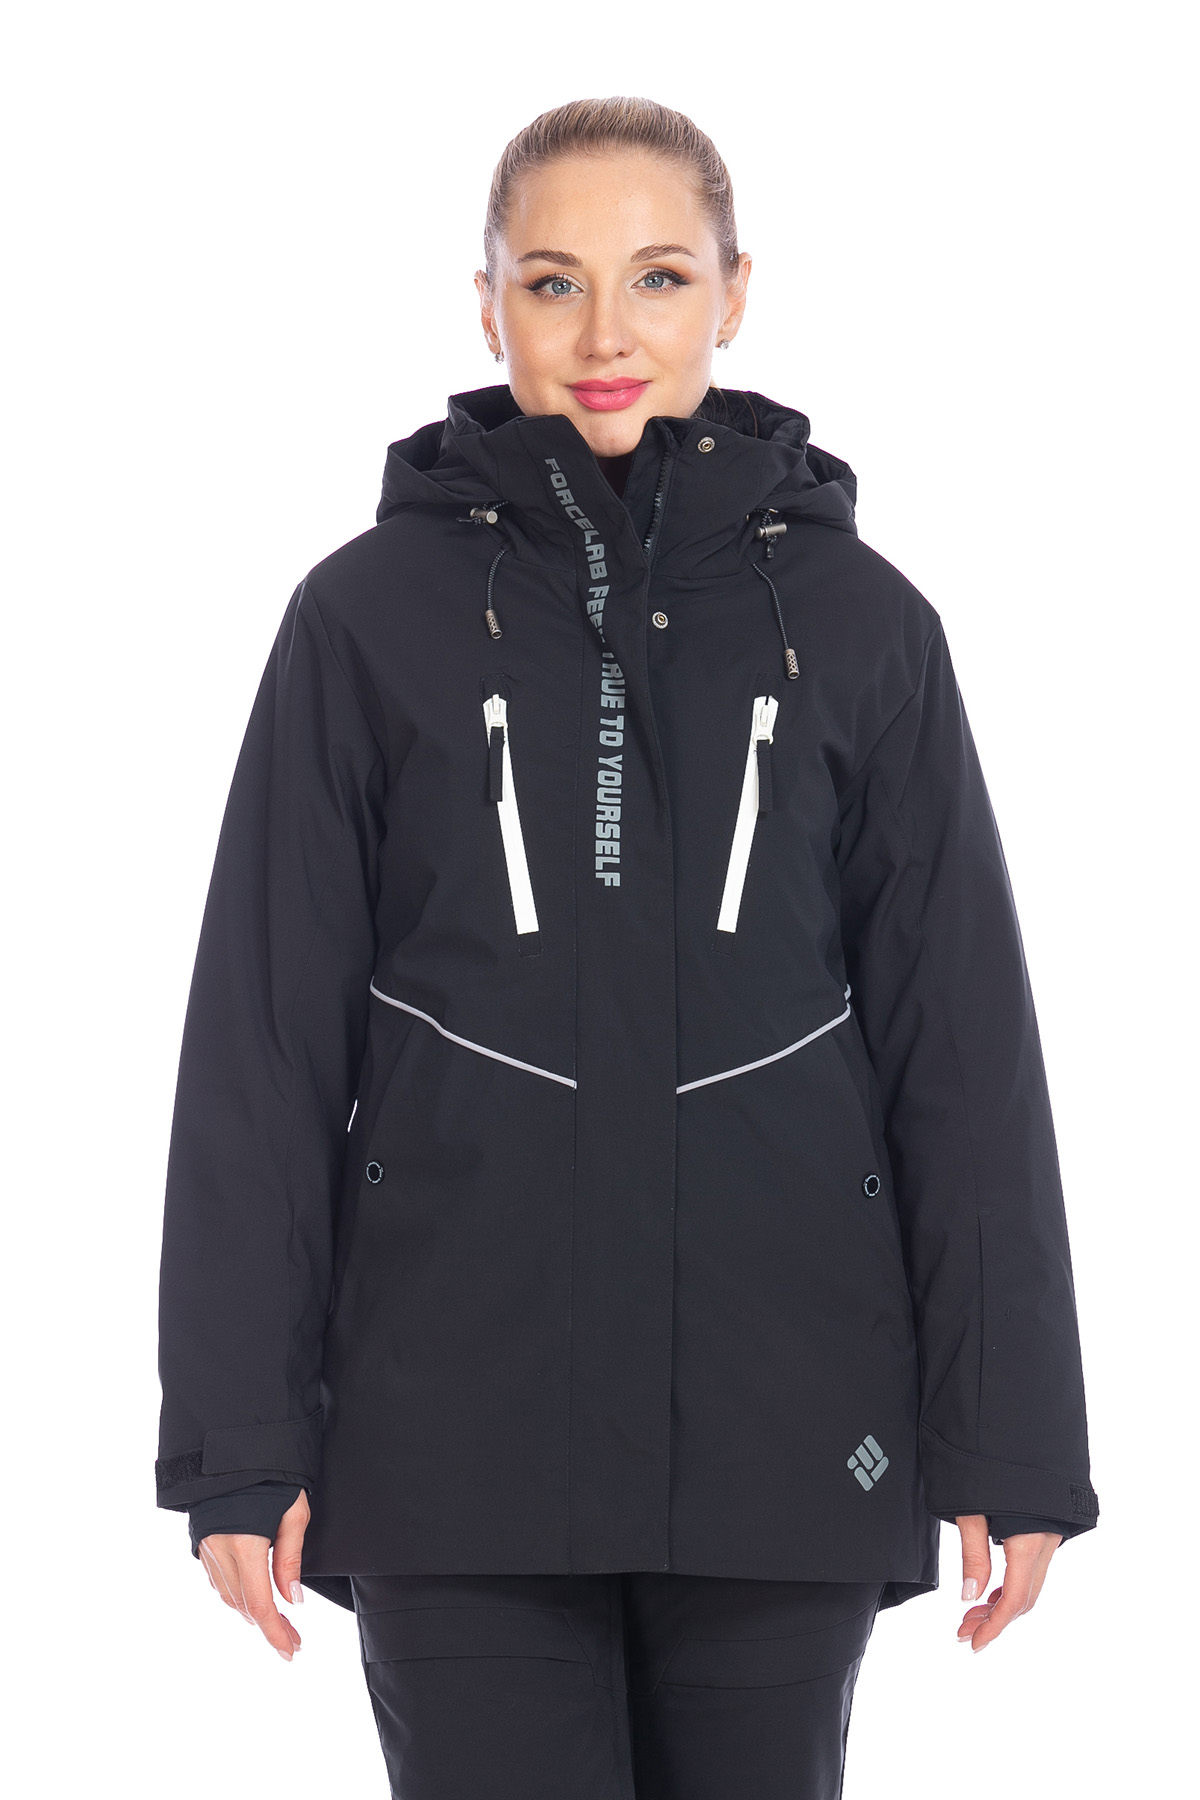 Куртка Forcelab Черный, 706621 (46, l)